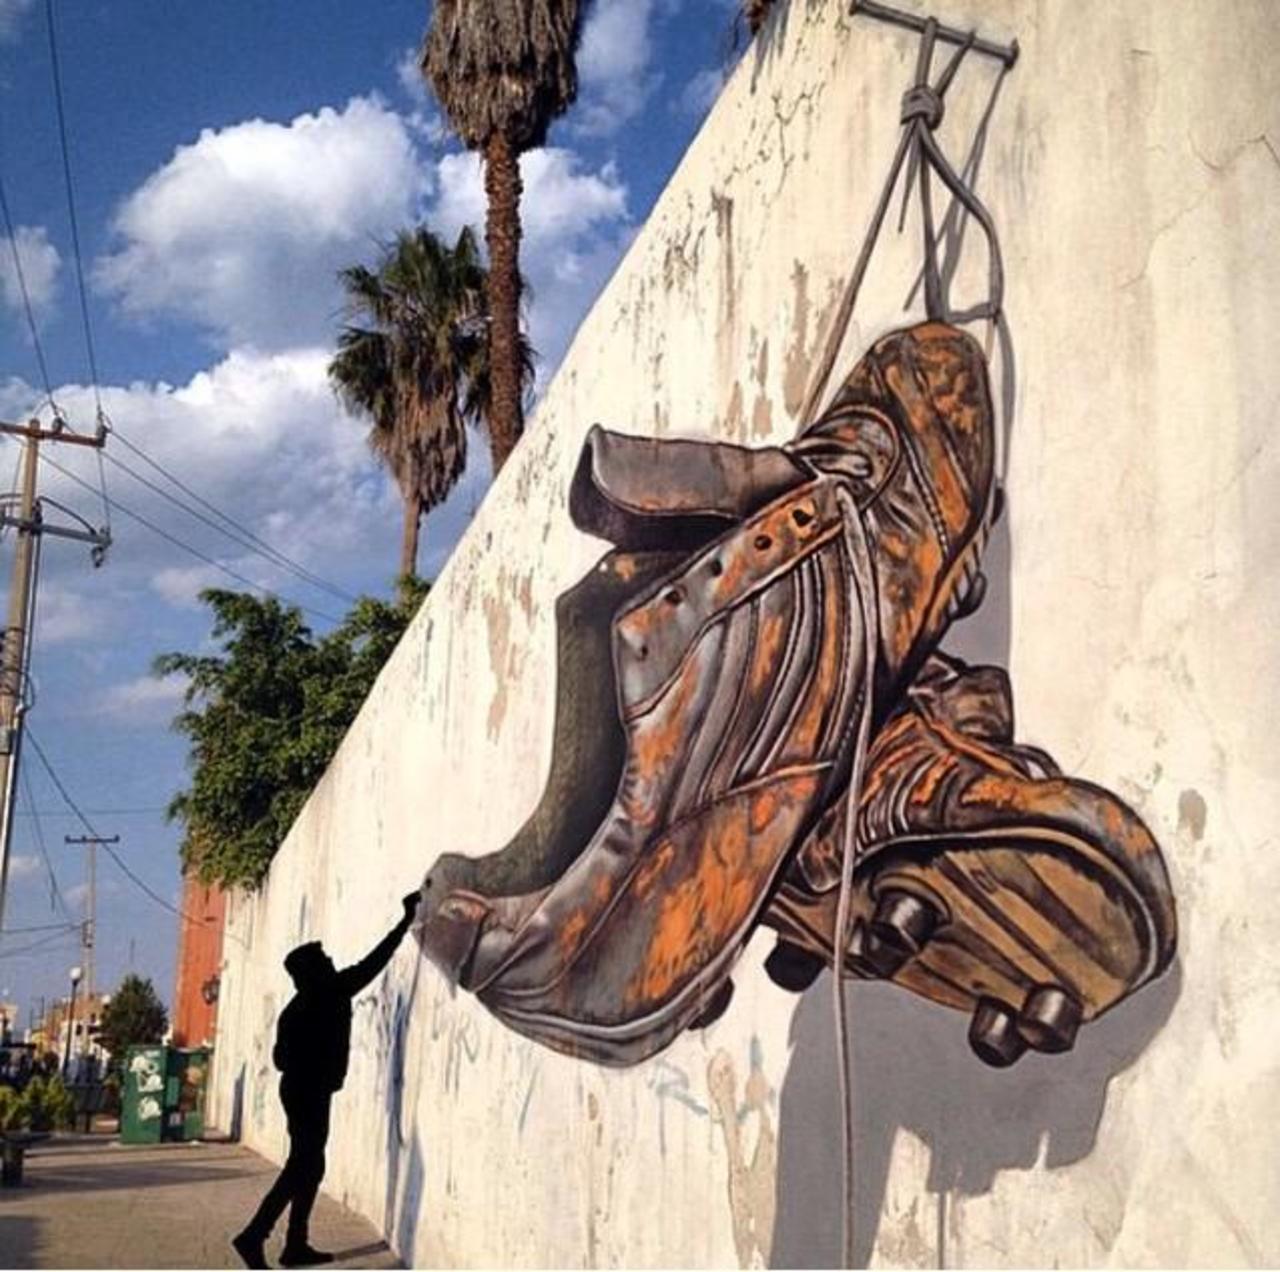 Awesome anamorphic 3D Street Art by Juandres Vera 

#art #graffiti #mural #streetart http://t.co/27TV4AsjTc